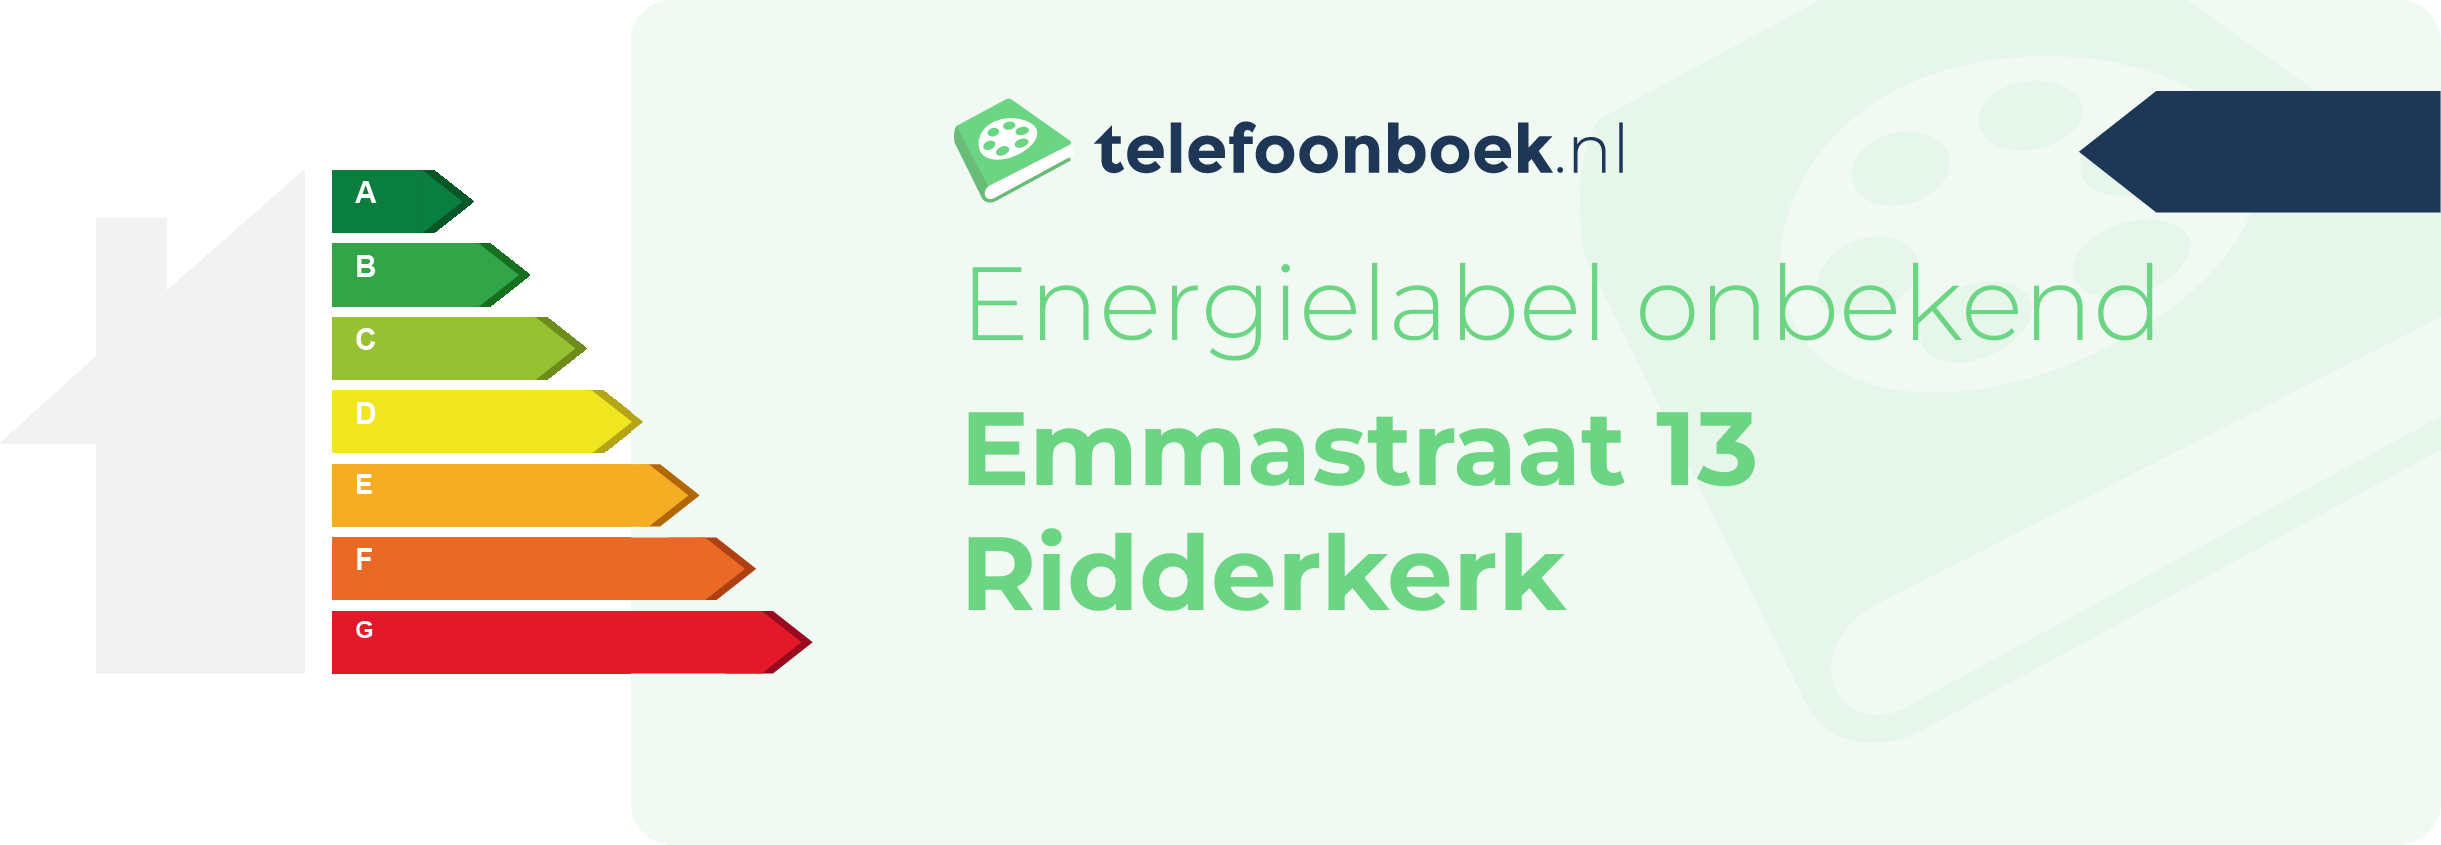 Energielabel Emmastraat 13 Ridderkerk